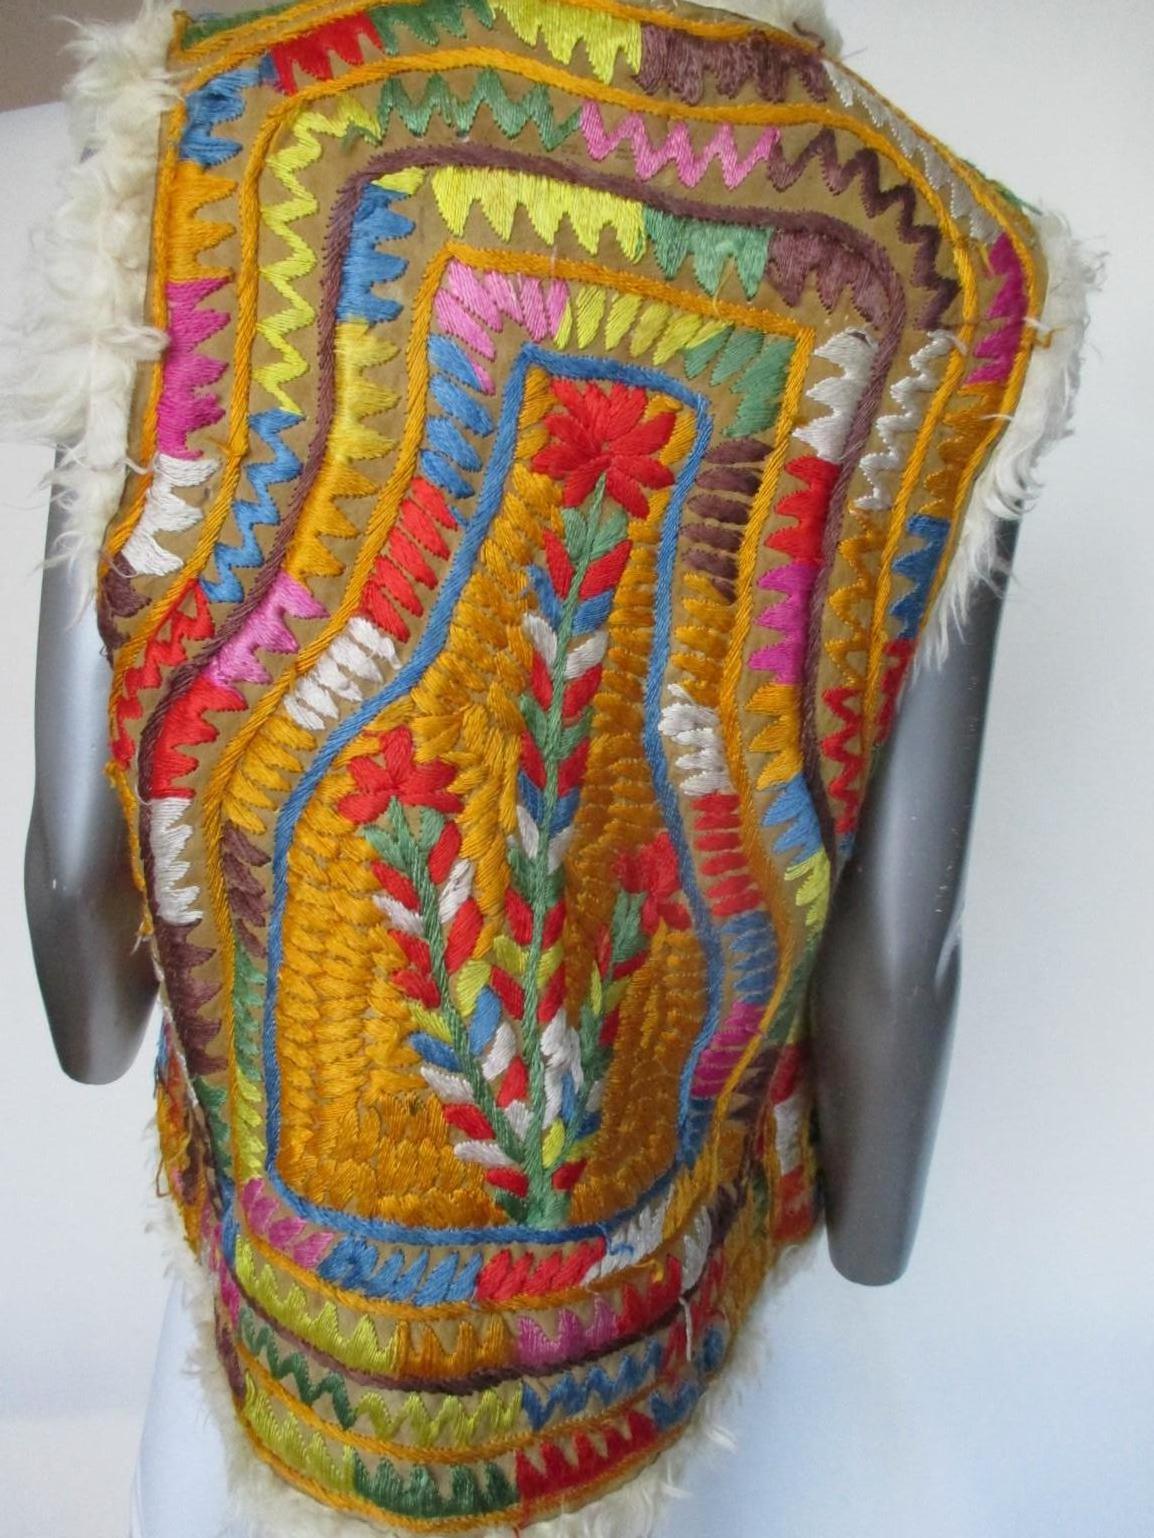 Cette authentique veste en shearling afghan a été fabriquée et brodée à la main en Afghanistan à la fin des années 60 et dans les années 70.
pas de poches, pas de boutons, pas de Label
Il est en bon état vintage, avec de l'usure et des stitsches